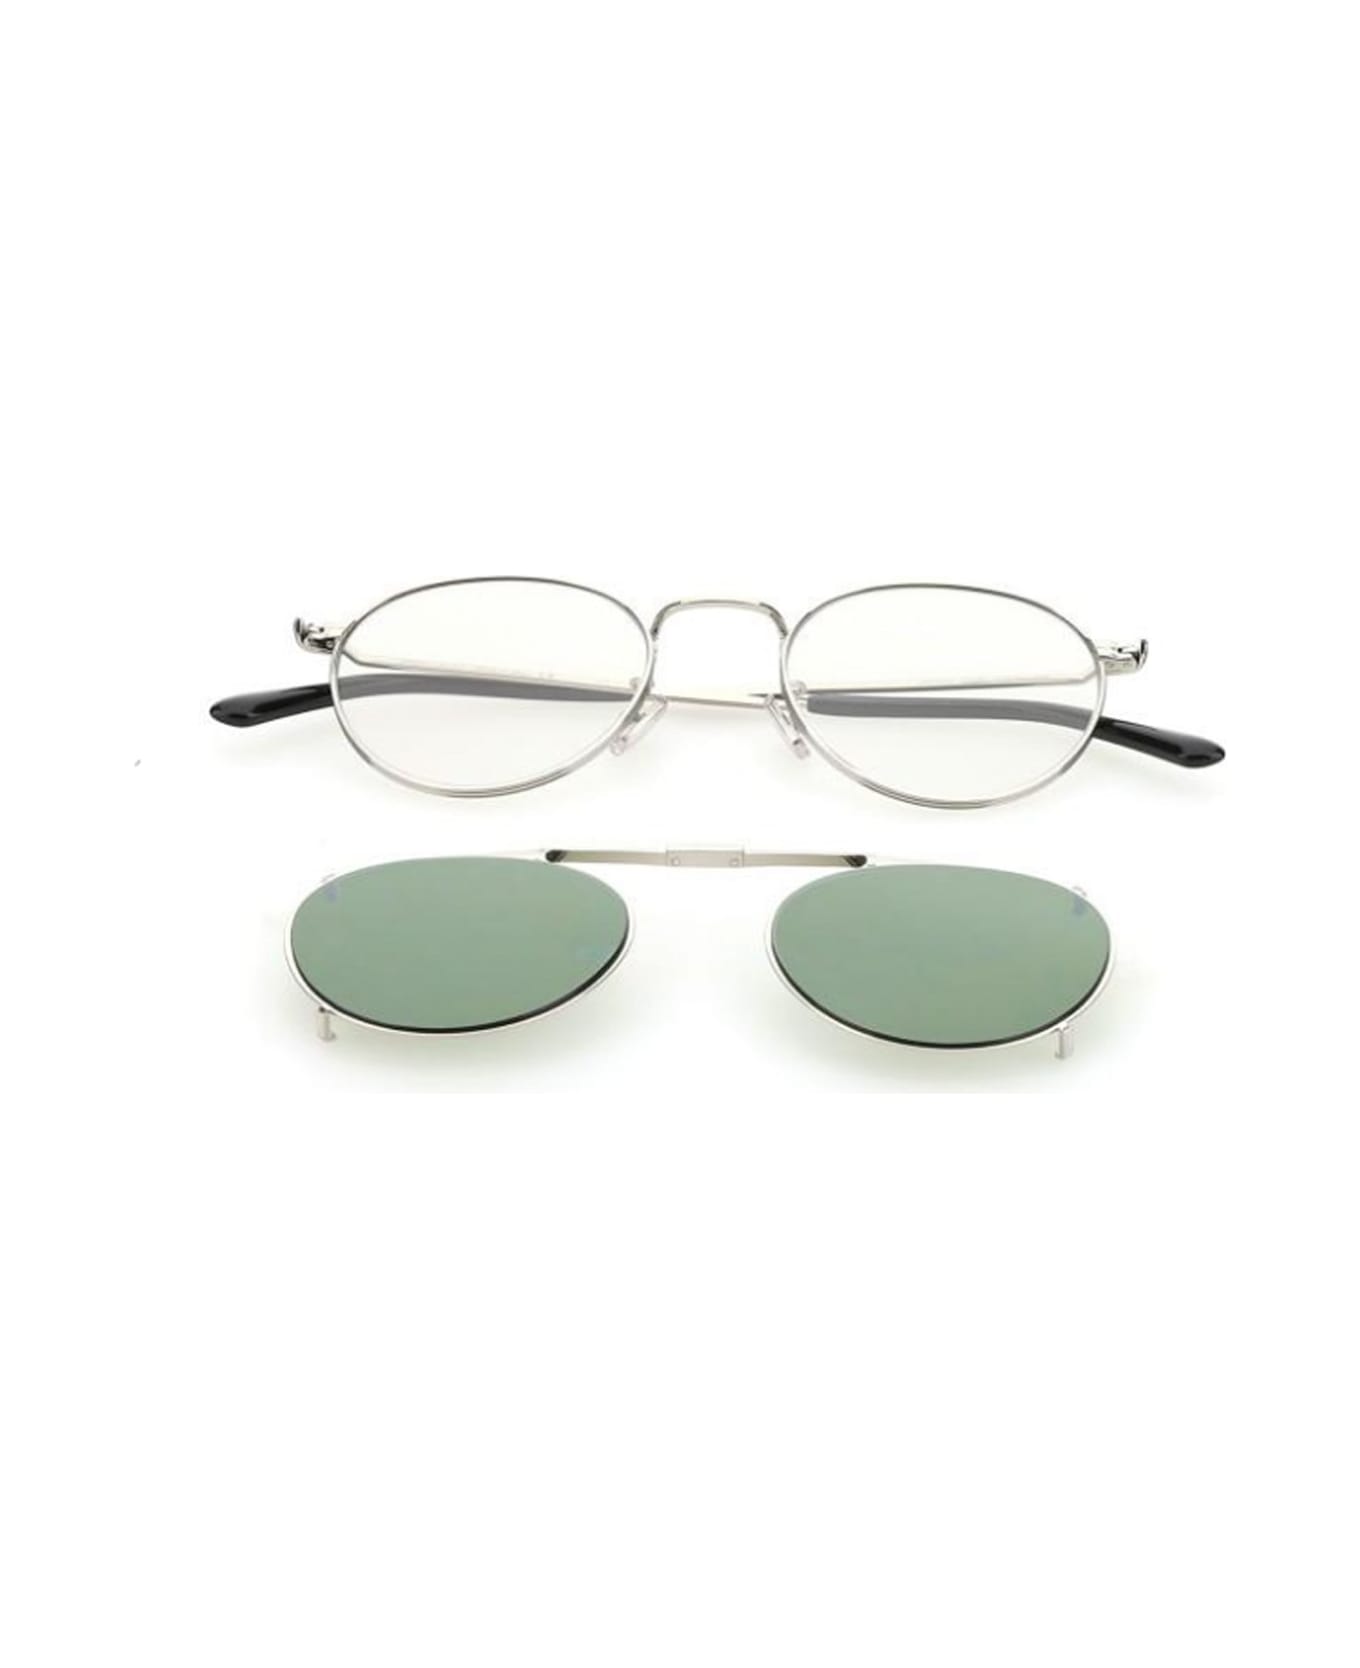 Jimmy Choo Eyewear Man Wynn/s Glasses - Argento アイウェア